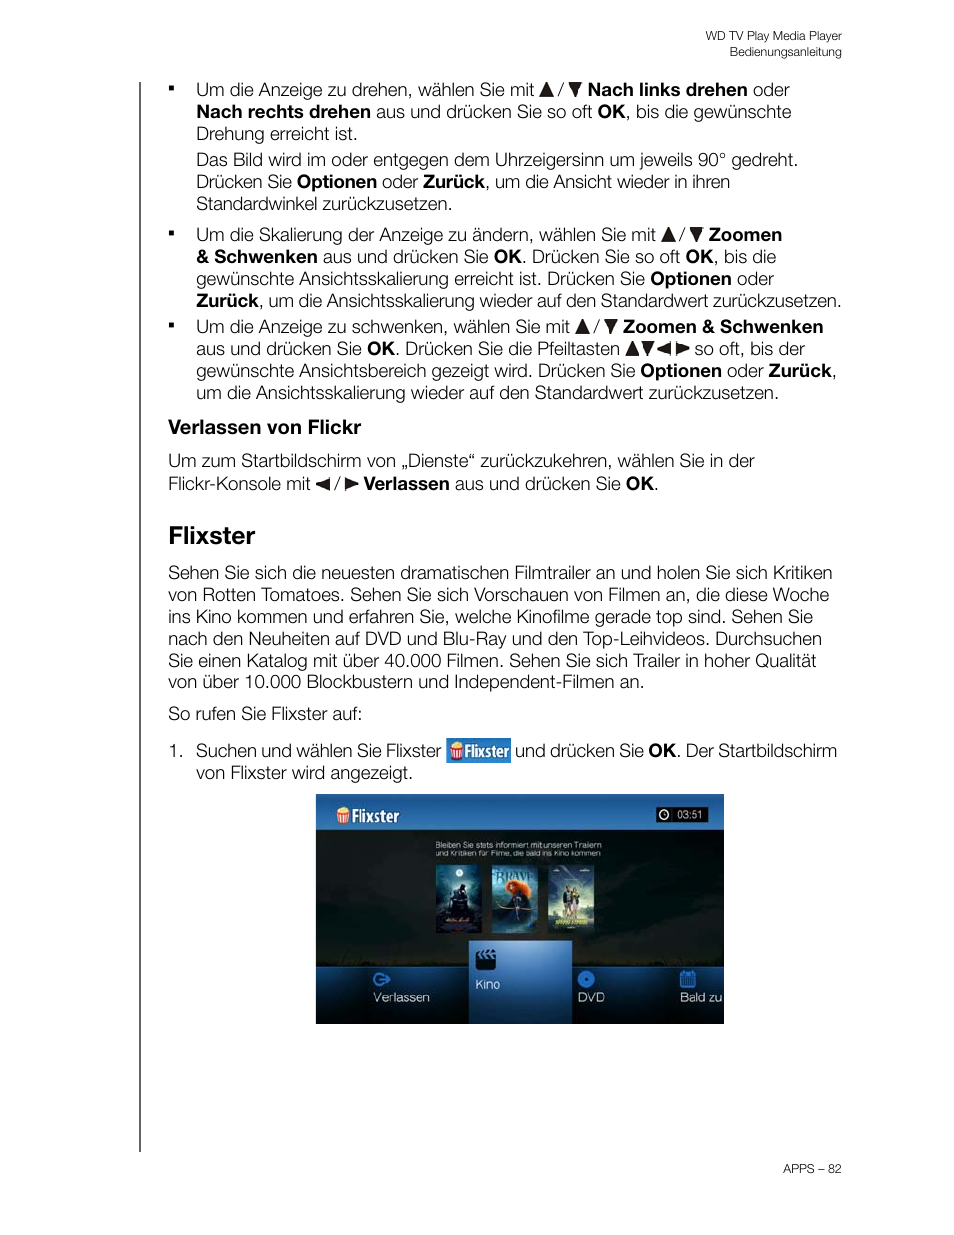 Verlassen von flickr, Flixster | Western Digital WD TV Play Media Player User Manual Benutzerhandbuch | Seite 87 / 180